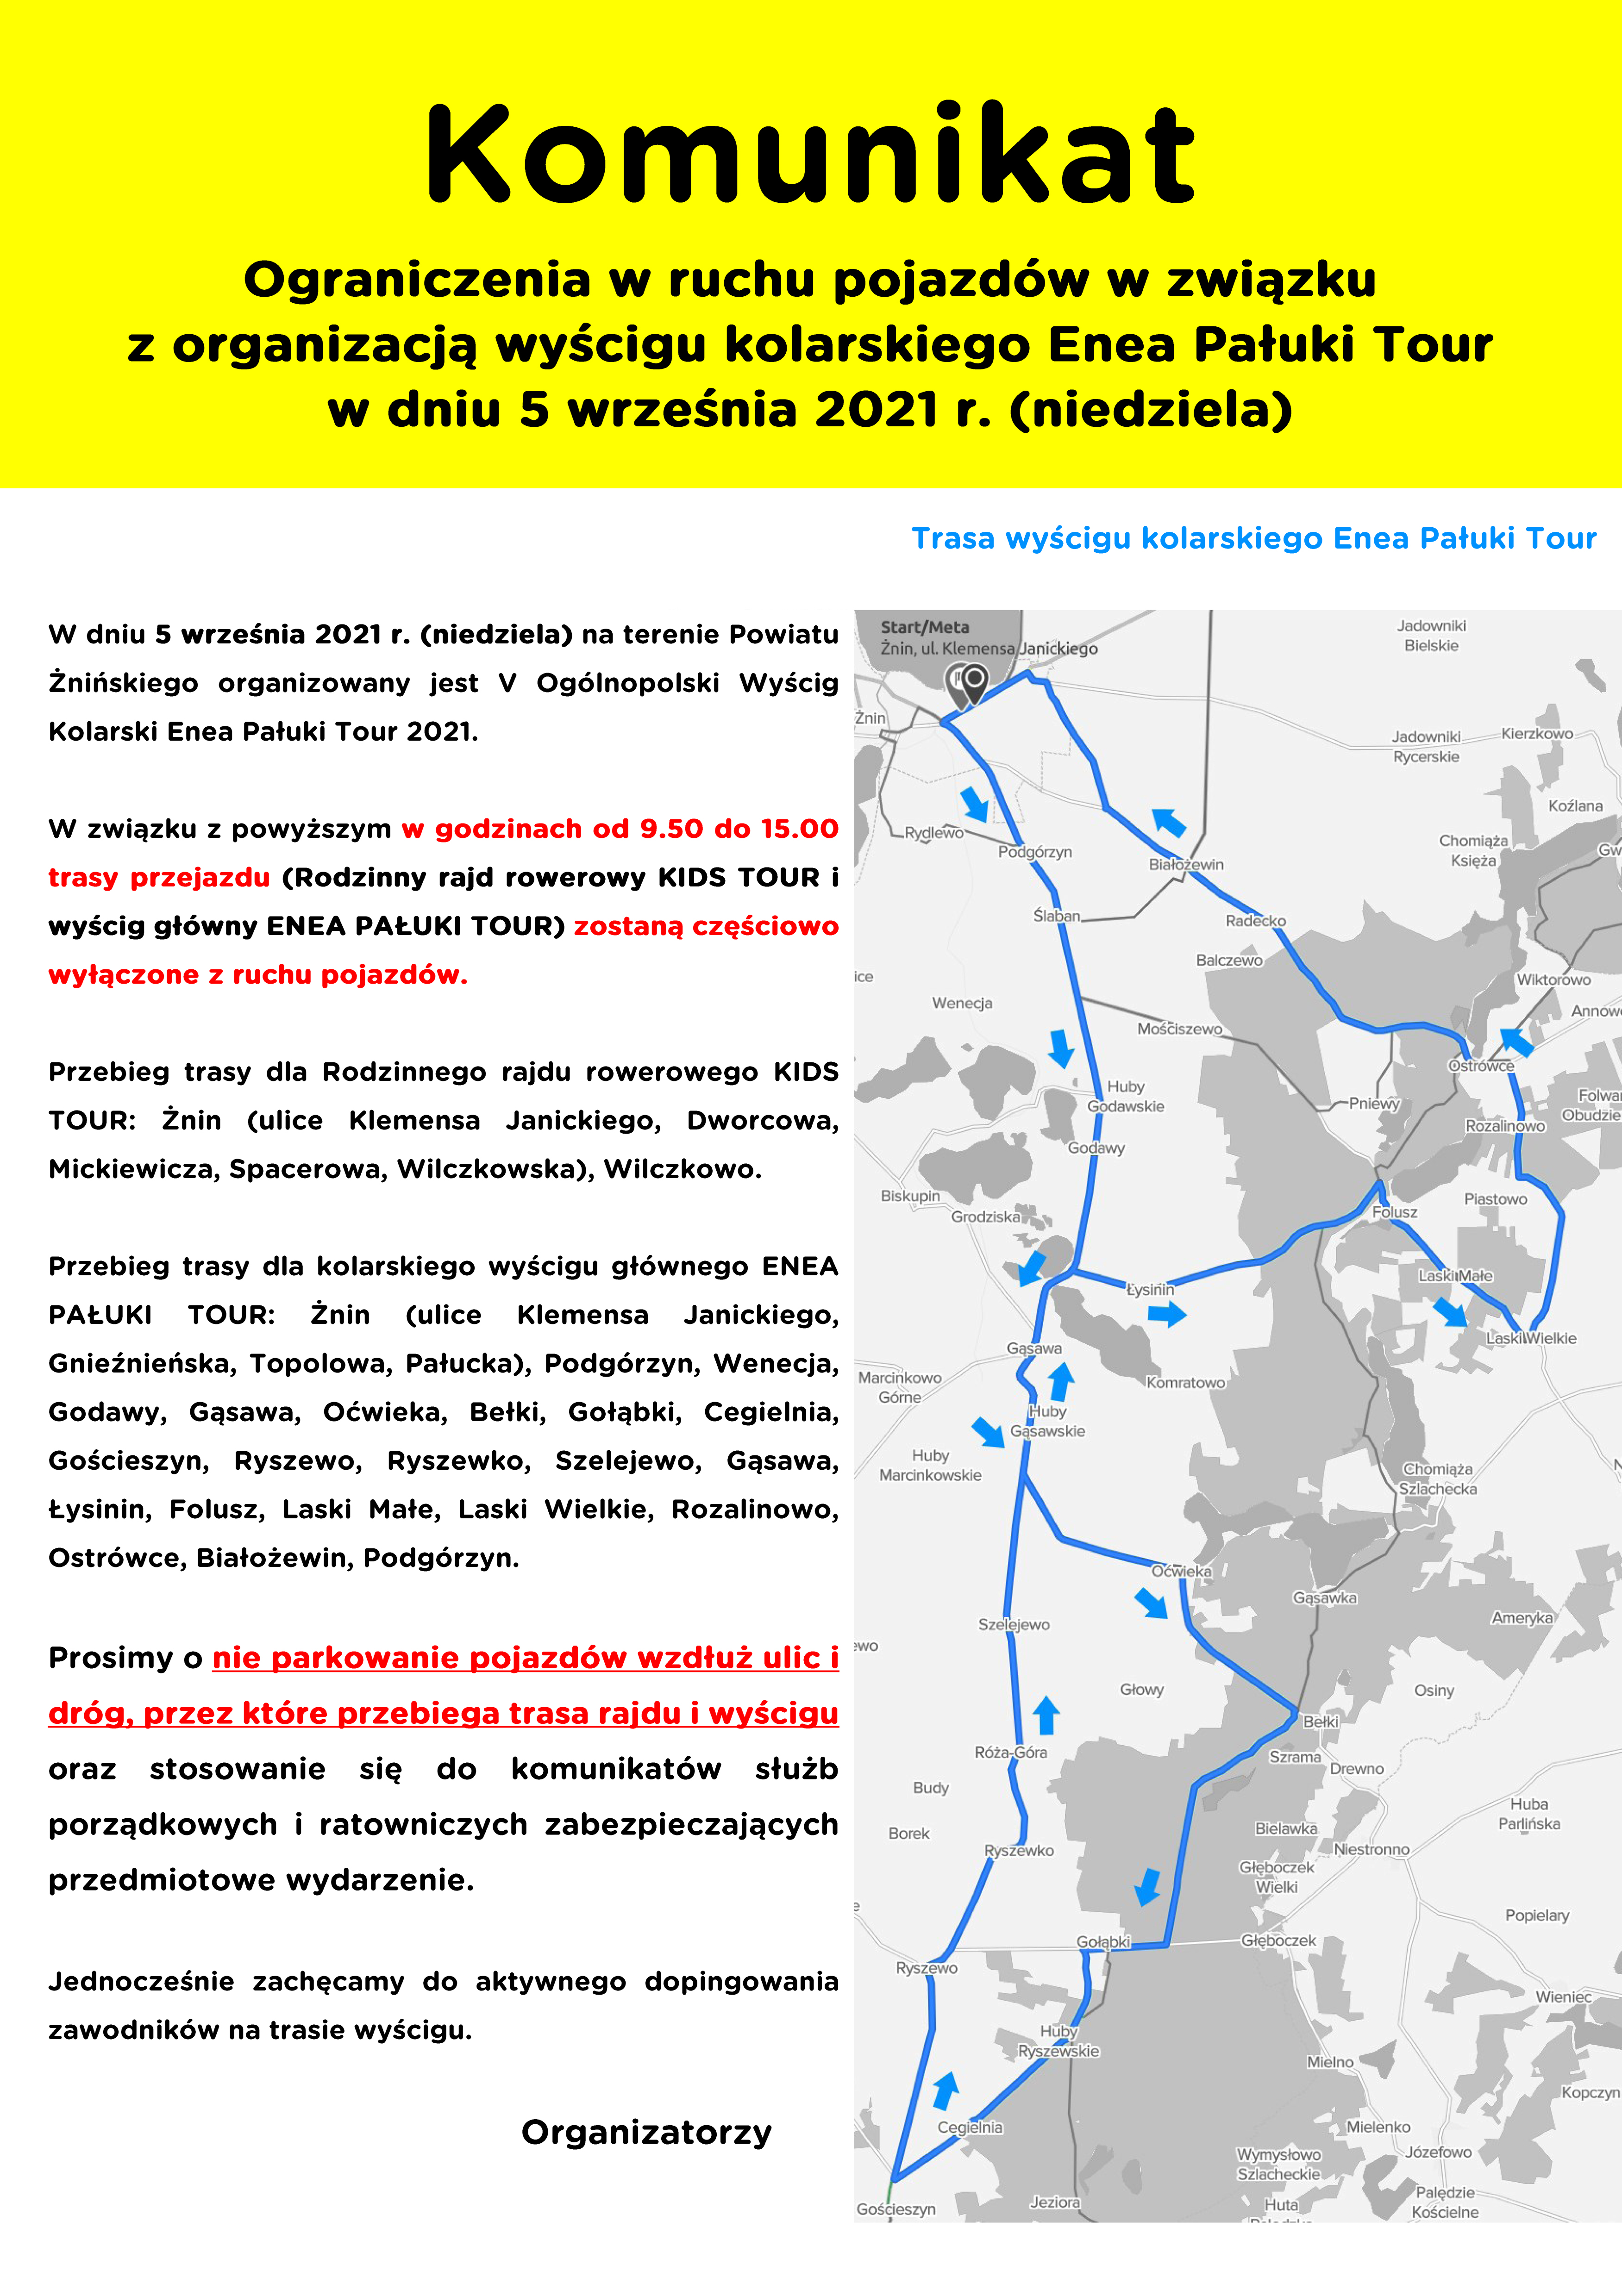 Komunikat - organiczenia w ruchu pojazdów w związku z organizacją wyściugu kolarskiego Enea Pałuki Tour w dniu 5 września 2021 roku